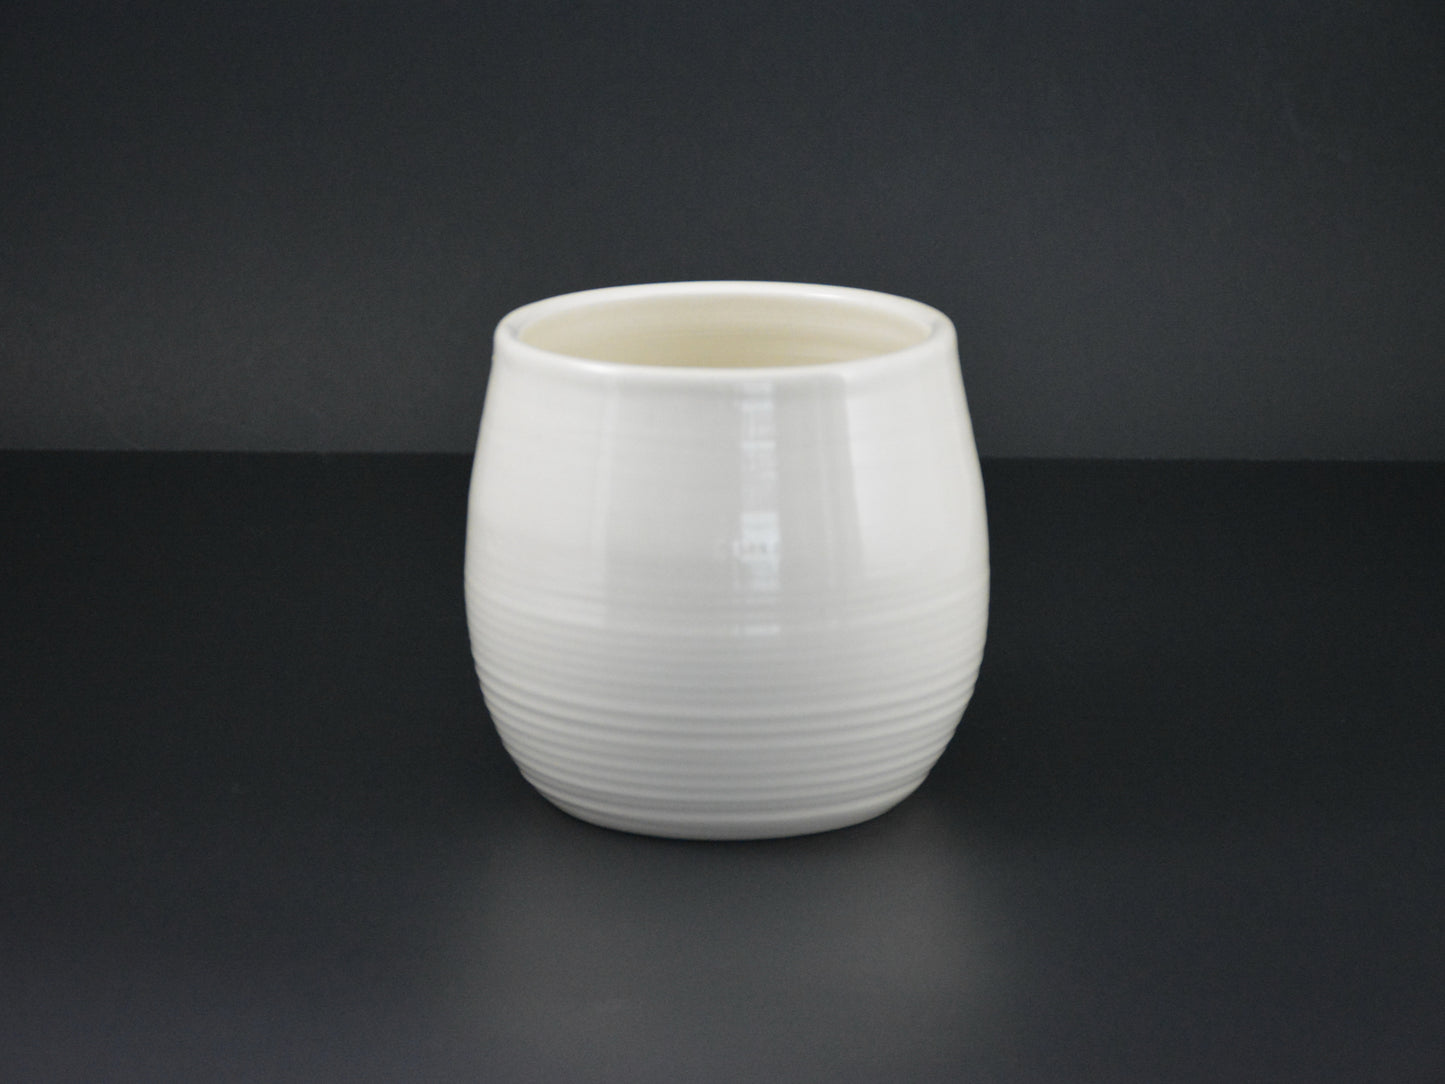 VAS-13 Pottery Ceramic White Pottery Vase 